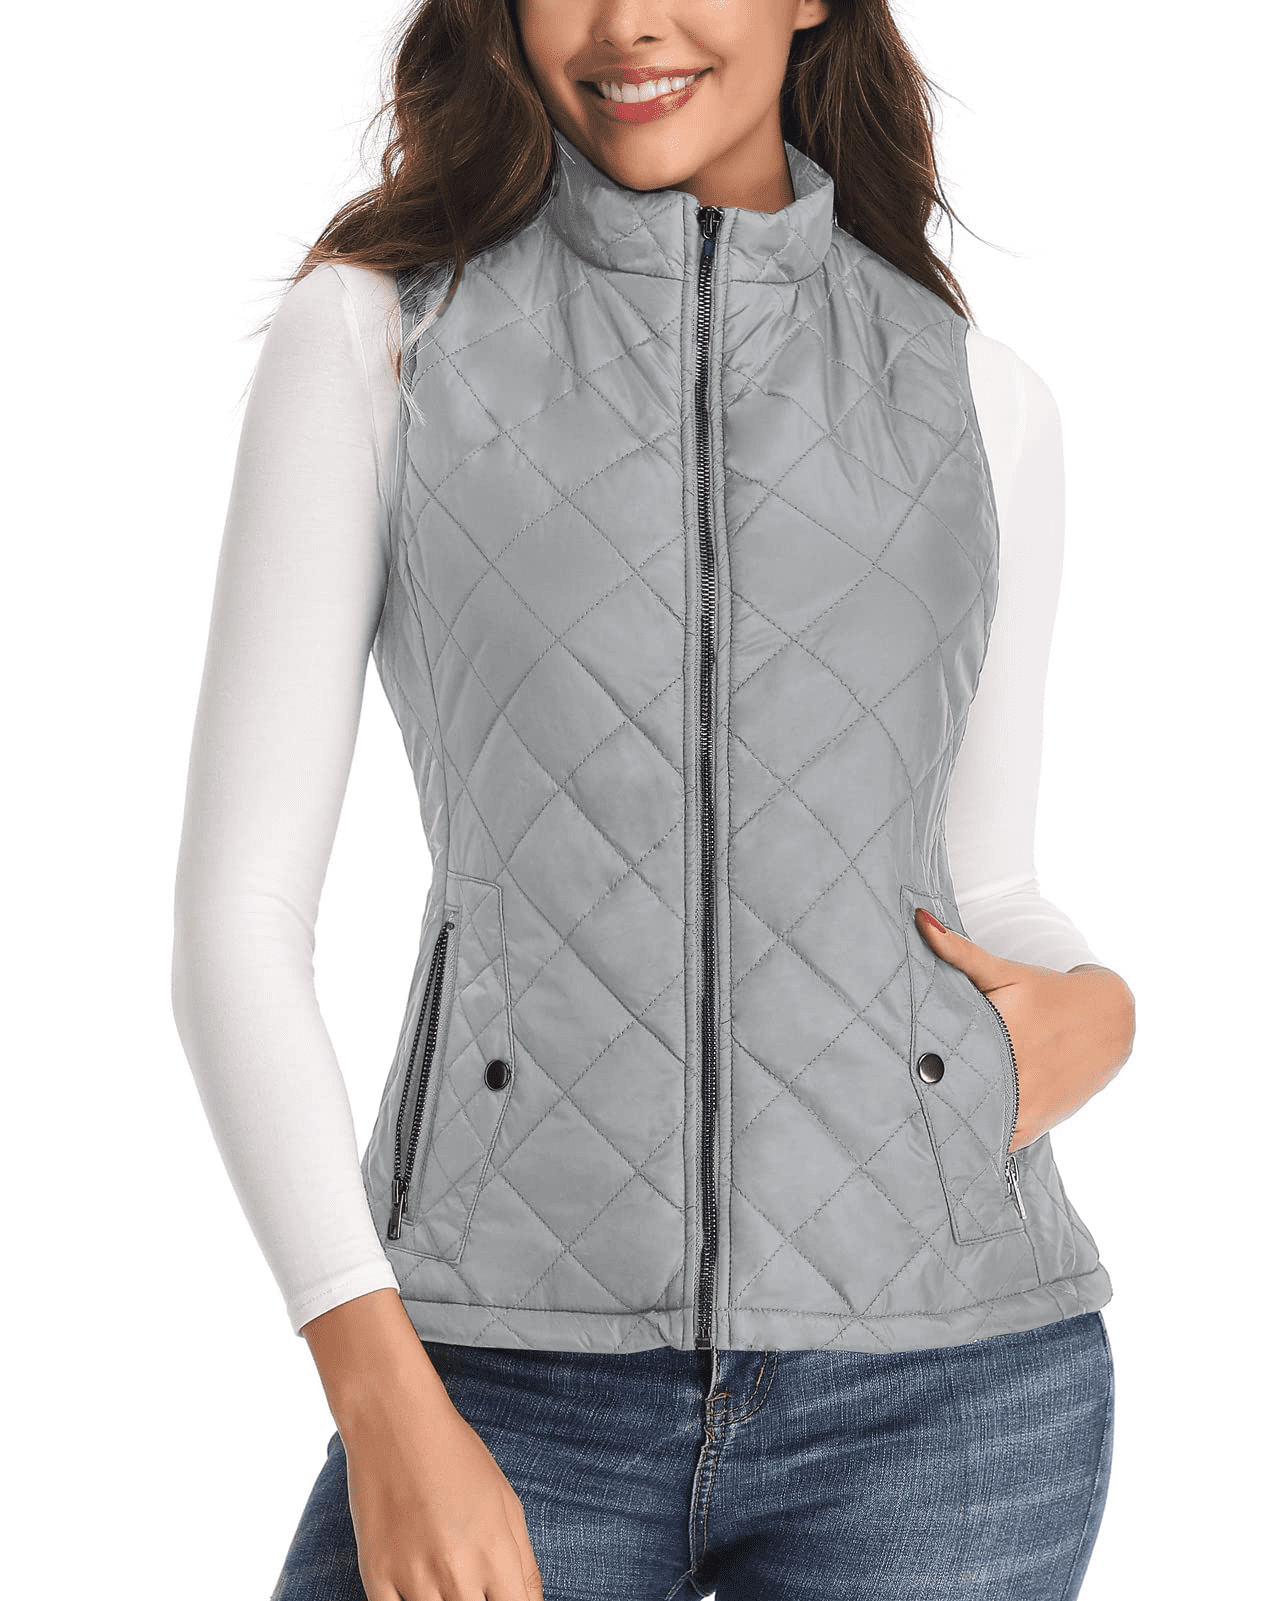 Clearance Plus Size Women Winter Warm Jacket Sleeveless Hooded Zip